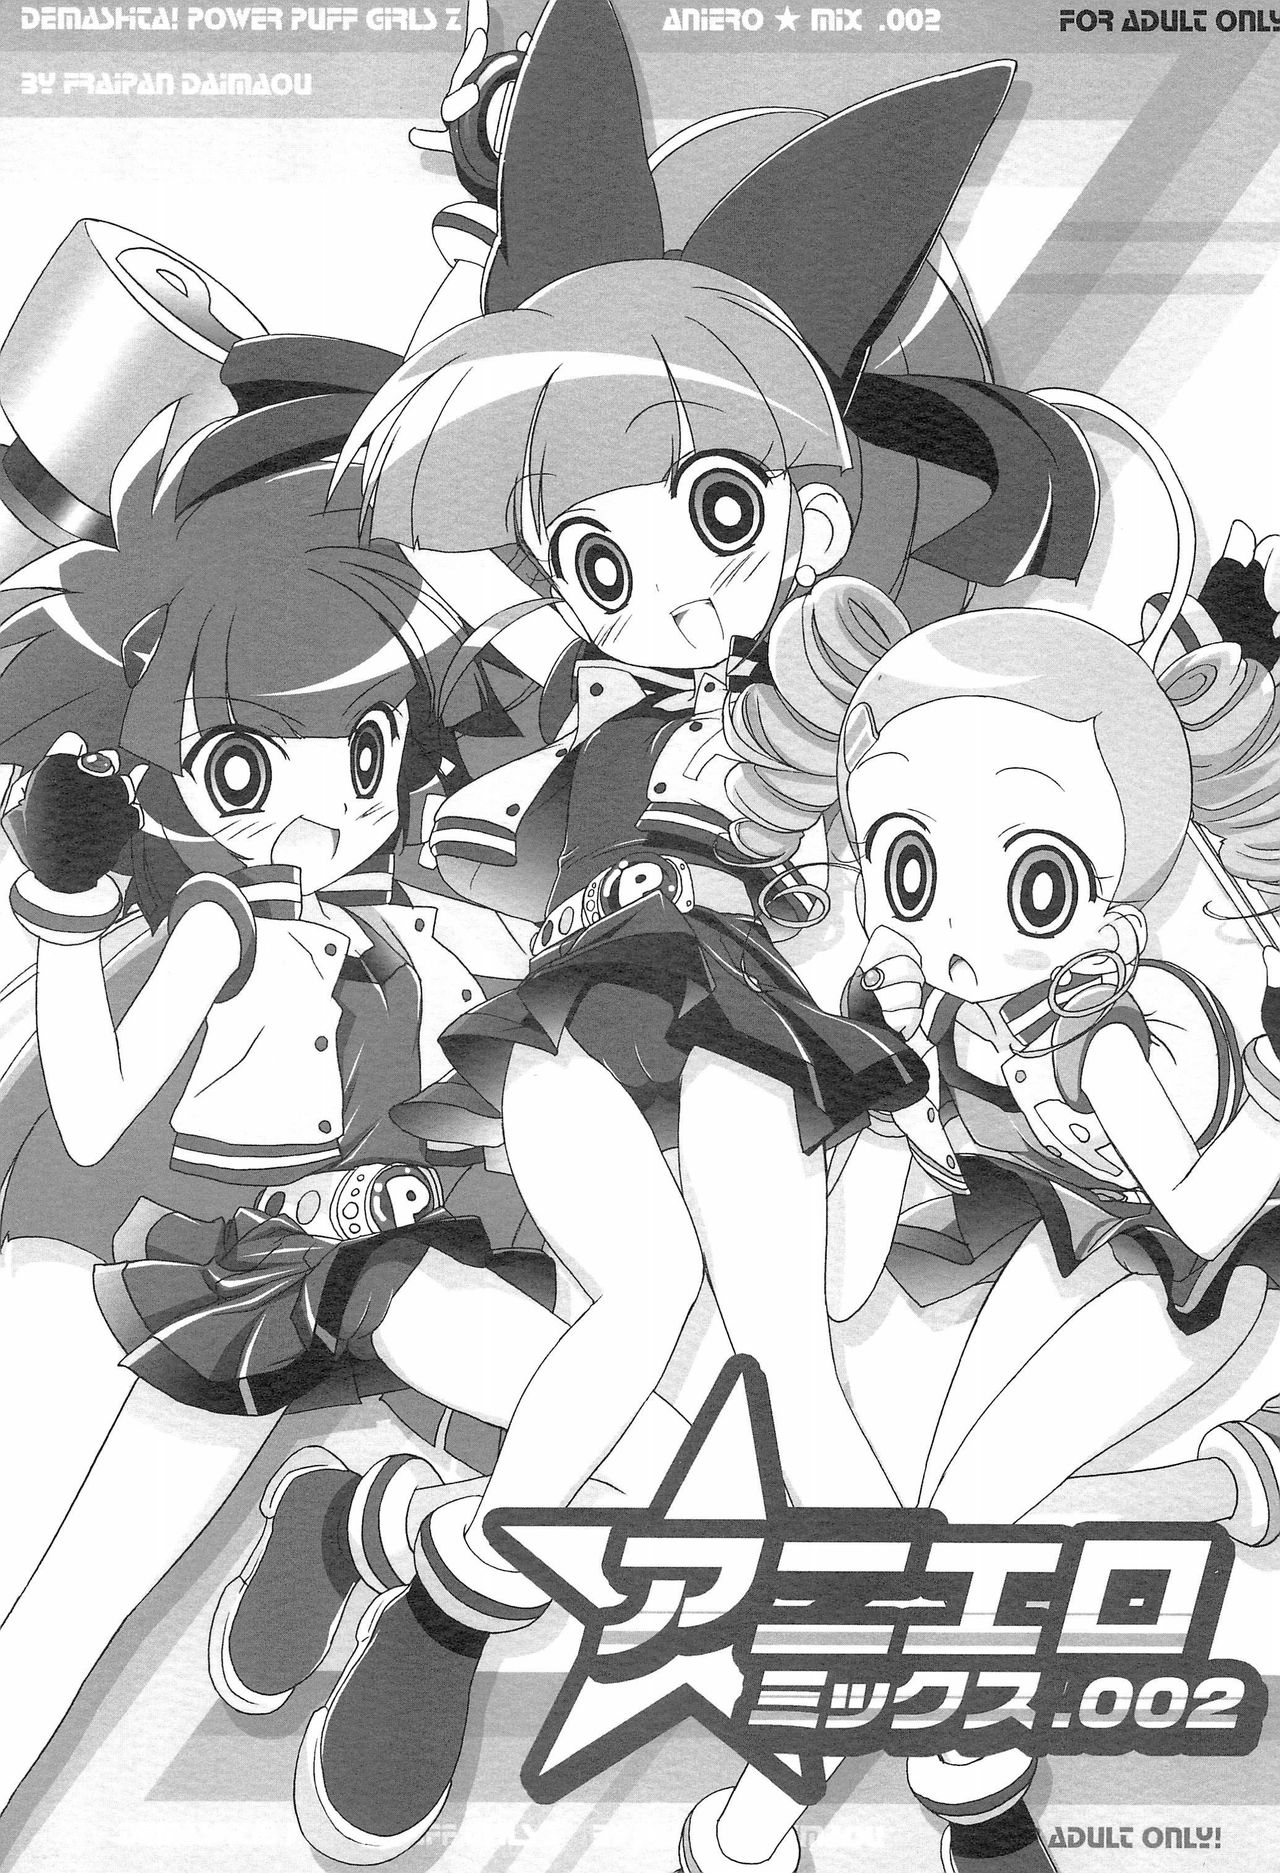 Powerpuff Girls Z Porn - C70) [Furaipan Daimaou (Chouchin Ankou)] AniEro Mix 002 (Powerpuff Girls Z)  - (C70) [Furaipan Daimaou (Chouchin Ankou)] AniEro Mix 002 (Powerpuff Girls  Z) [English] [Risette] - Free Hentai Manga, Adult Webtoon, Doujinshi